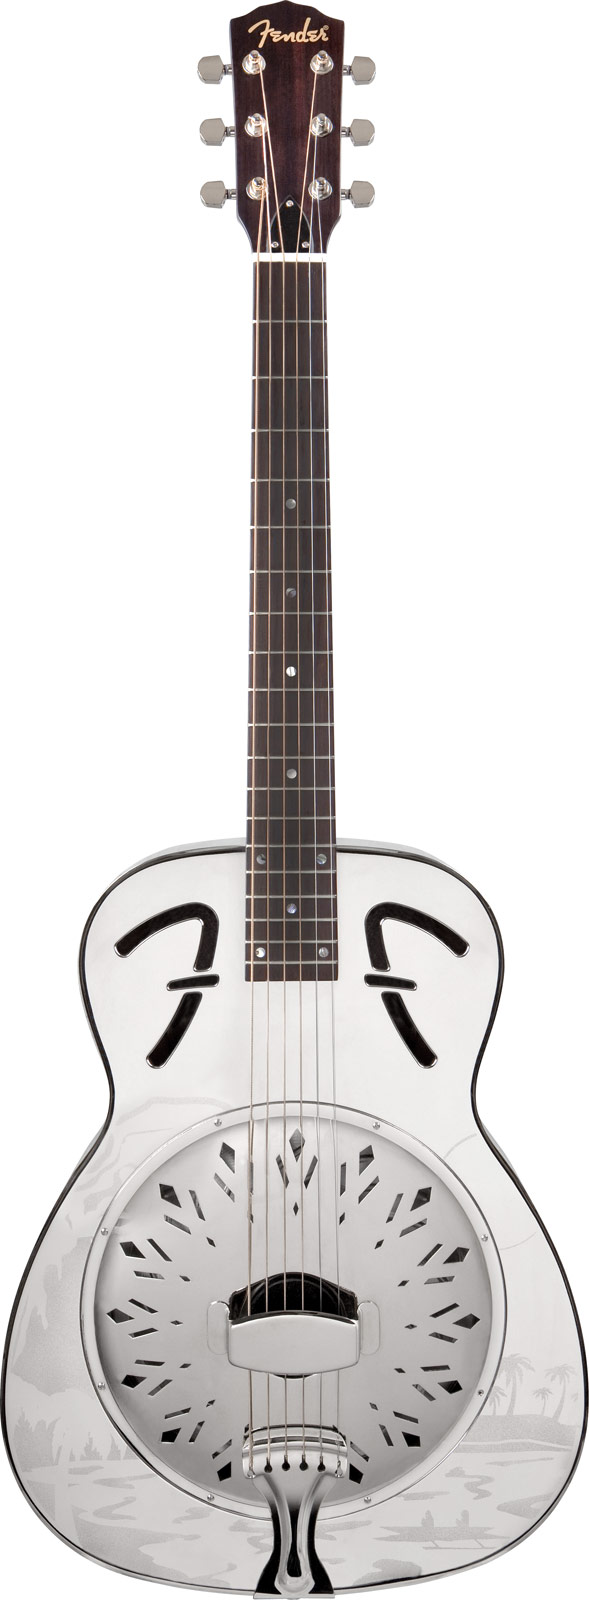 Fender Fender FR-55 Hawaiian Resonator Guitar